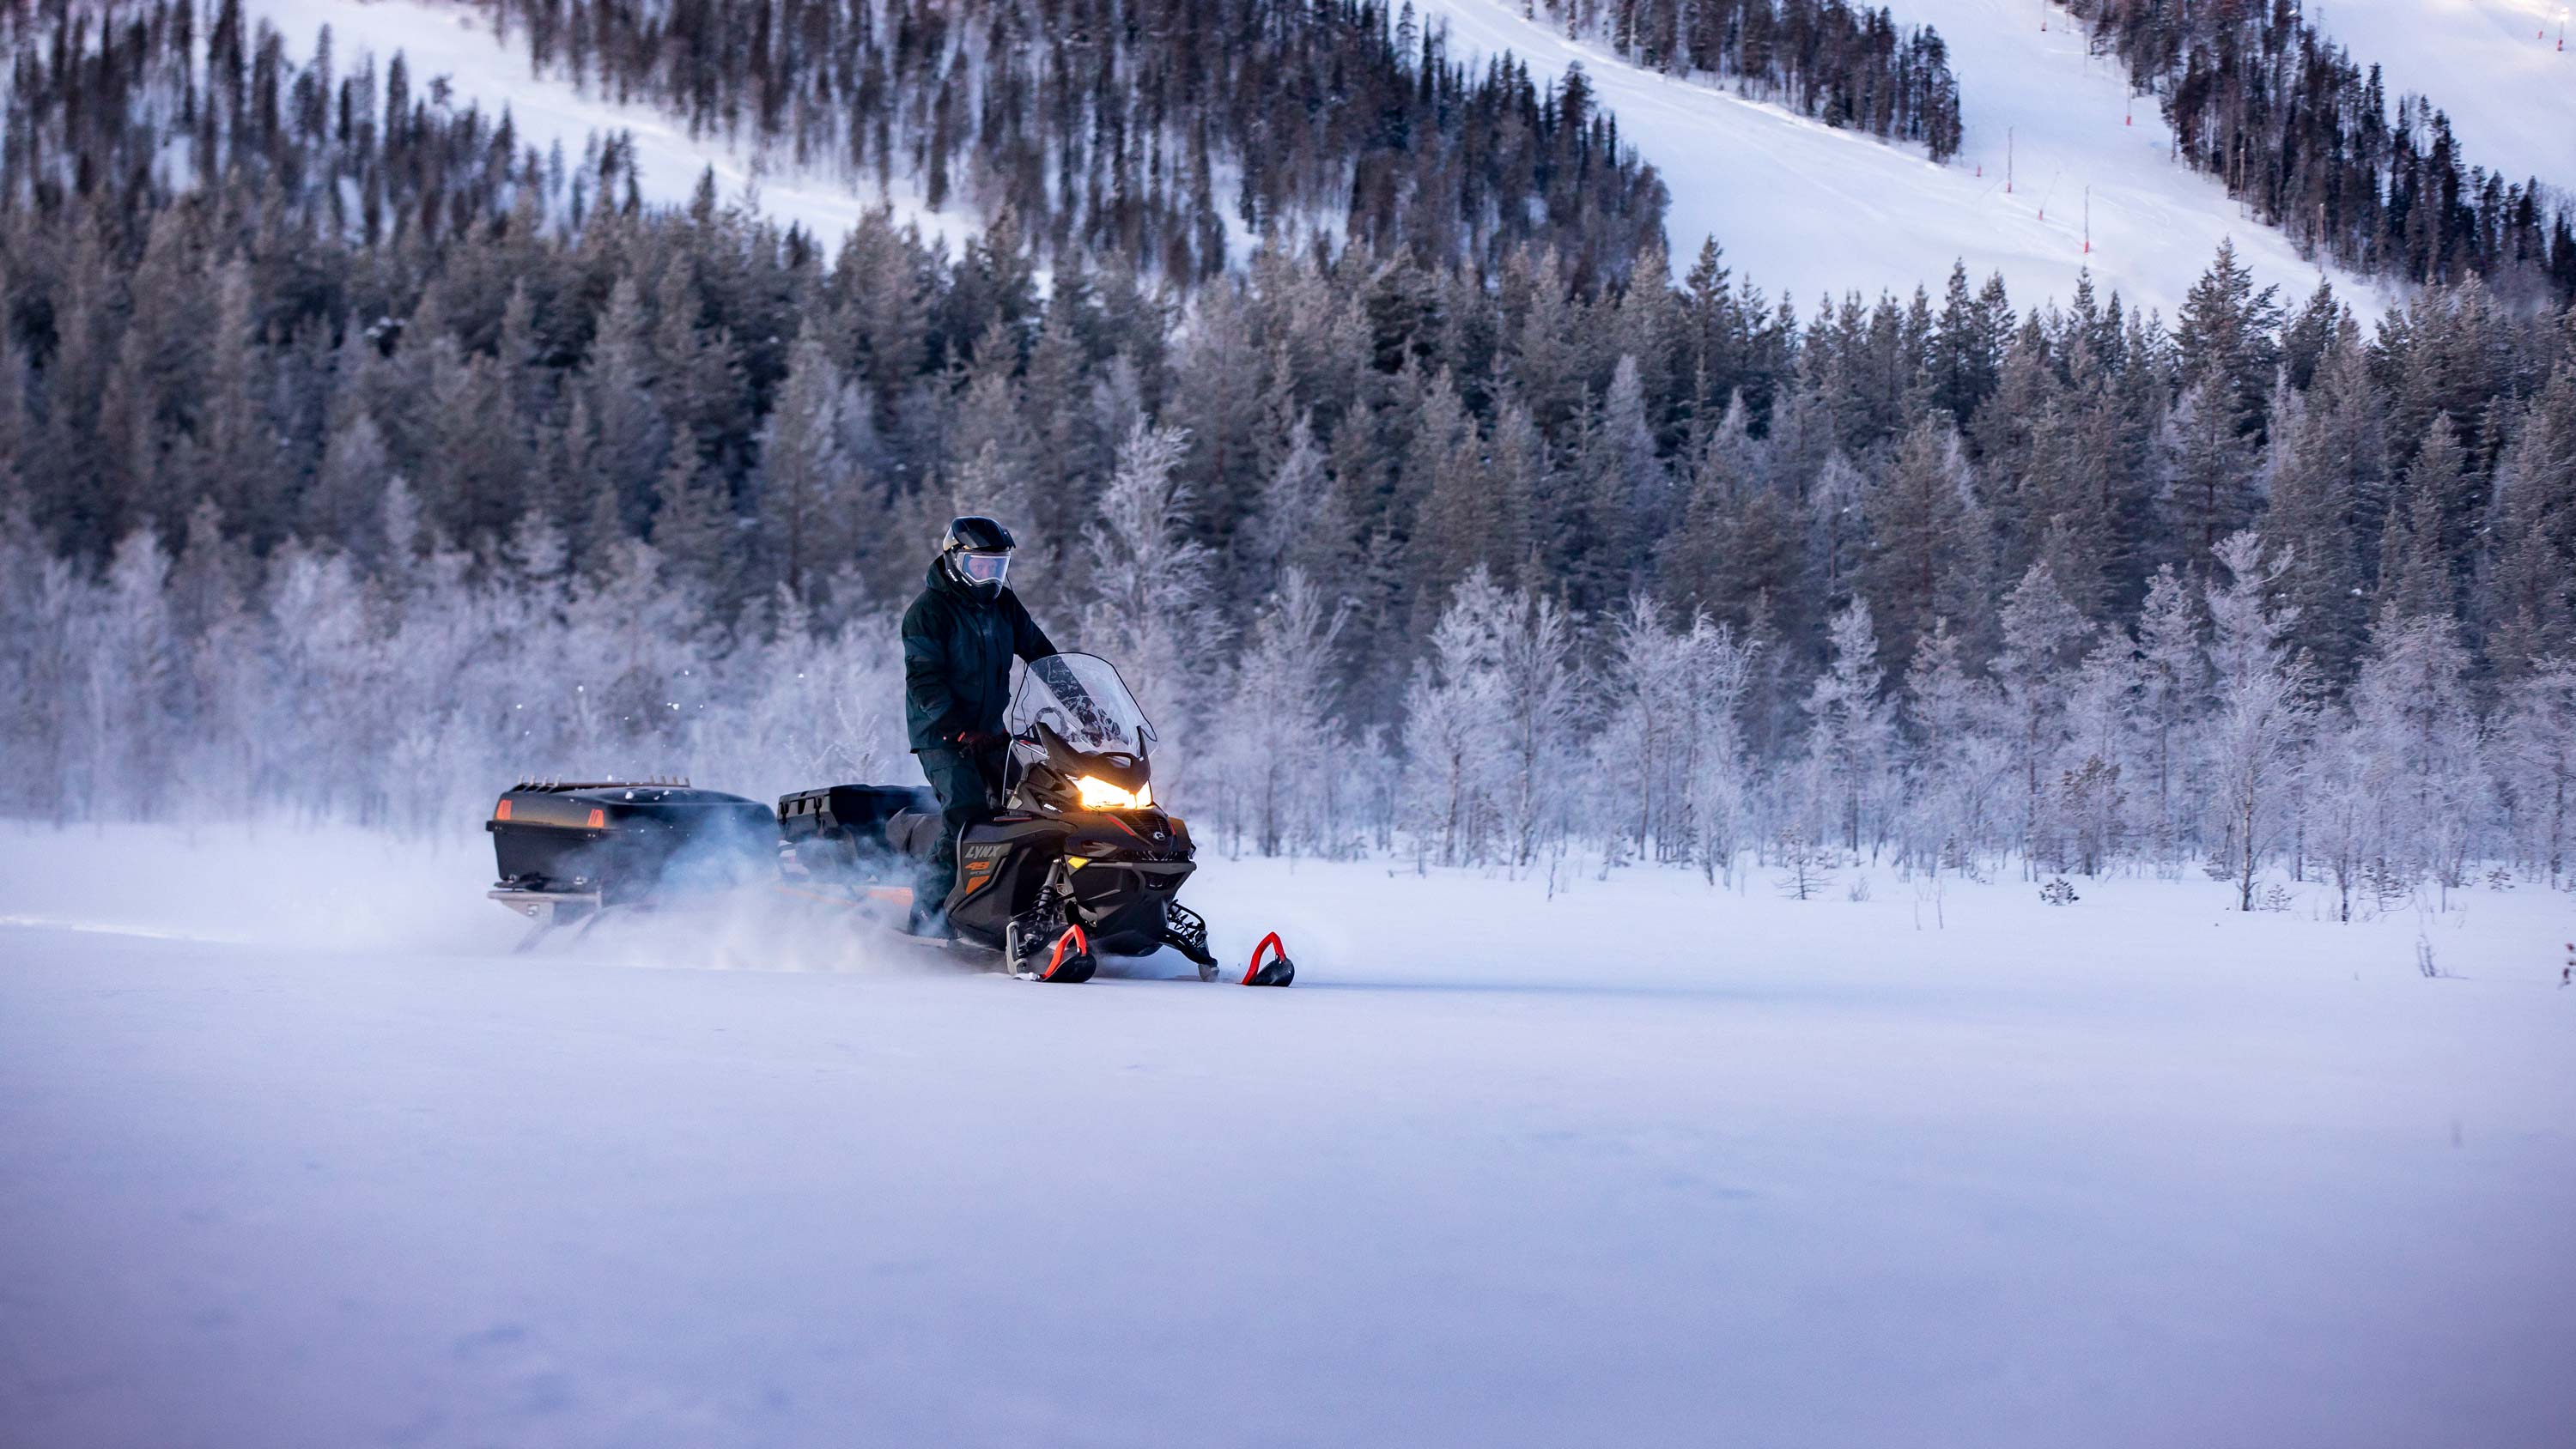 Lynx 49 Ranger Pro snowmobile riding at dusk in ski resort